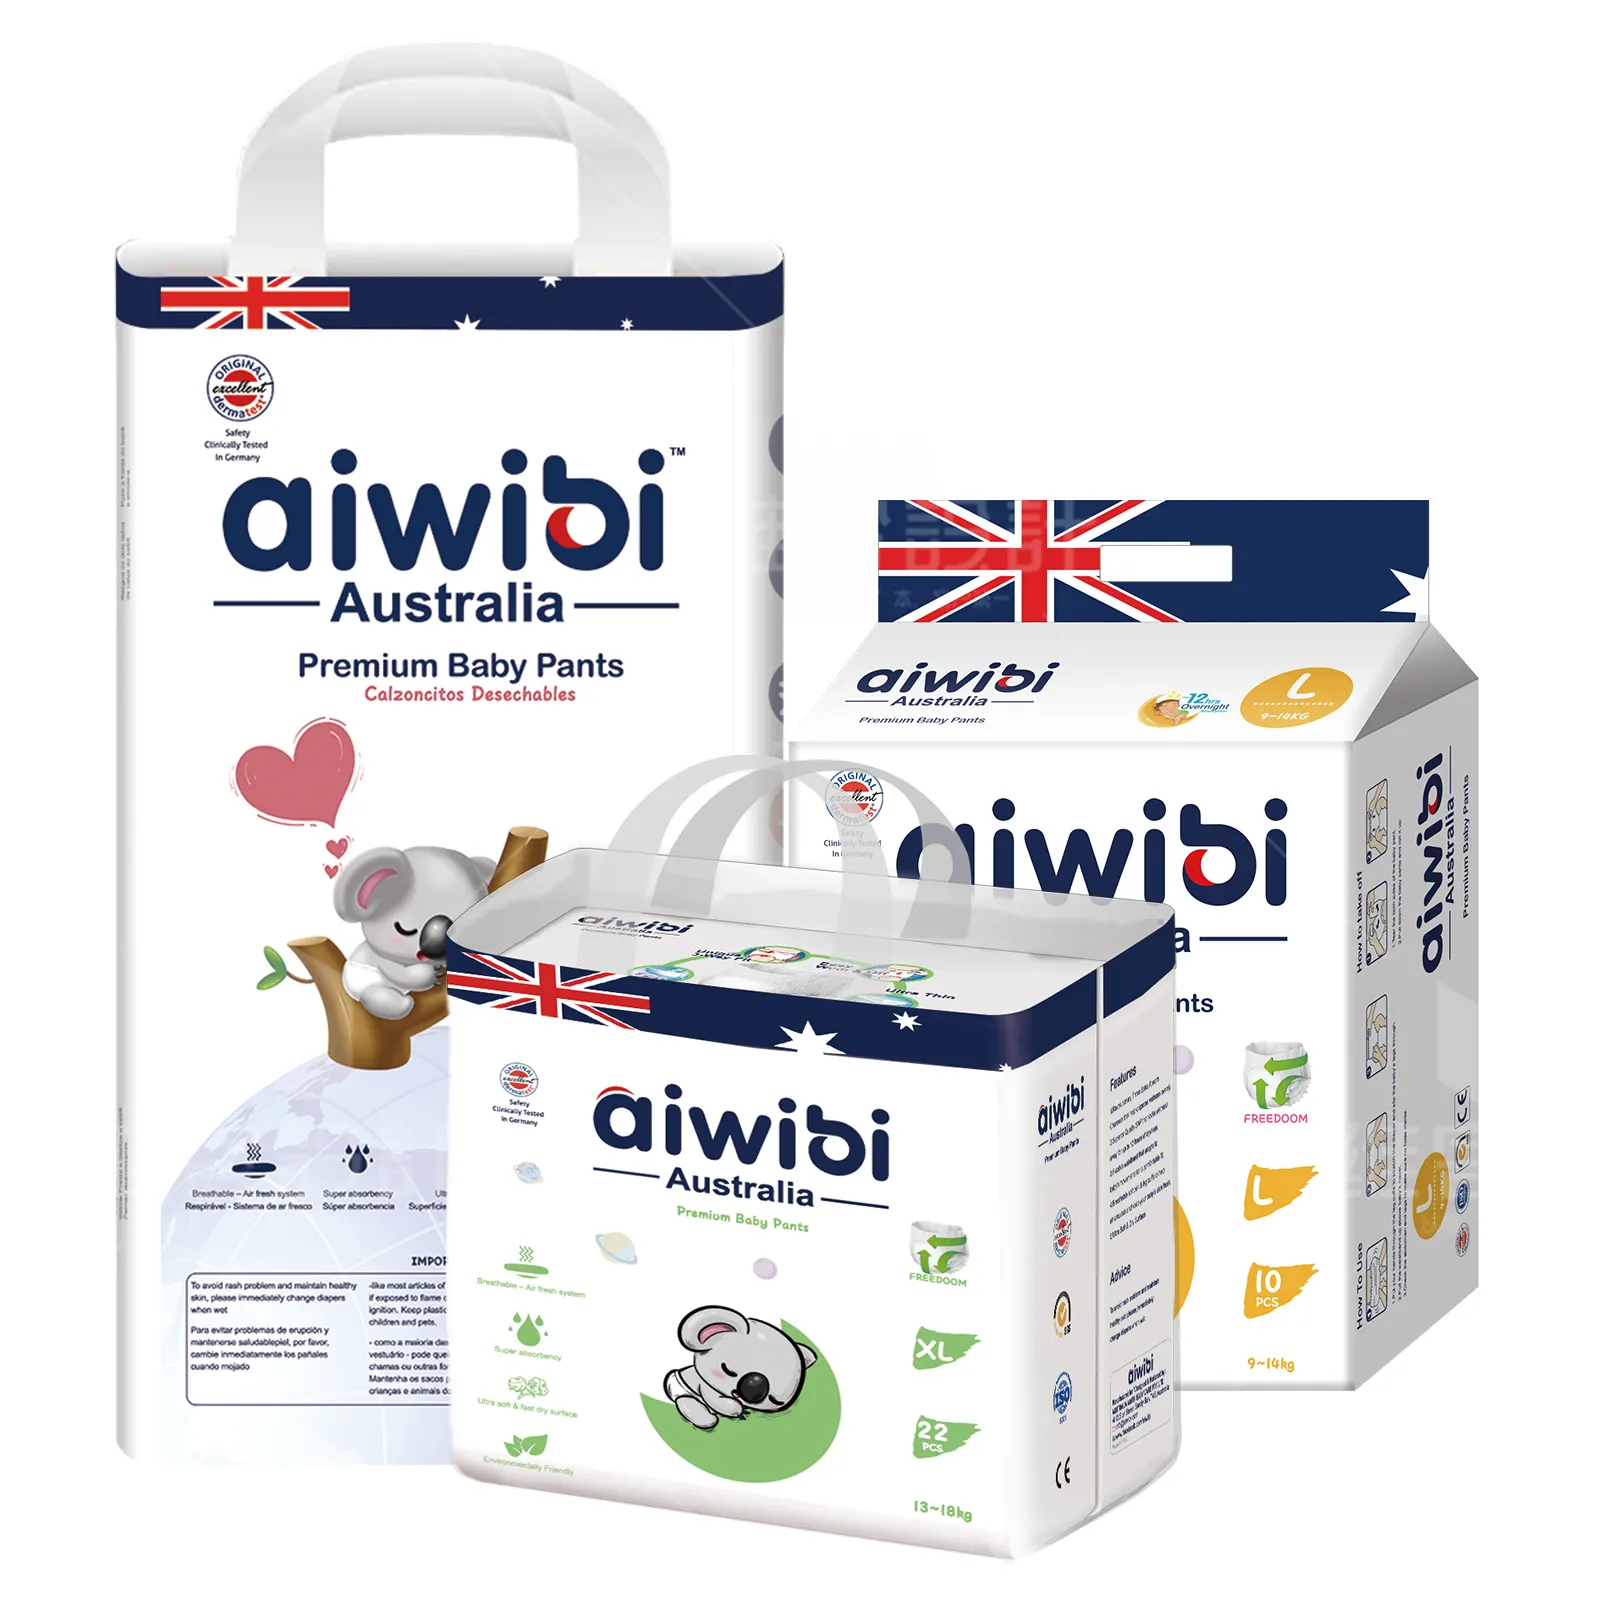 AIWIBI العلامة التجارية تعزيز تخصيص و رخيصة نيس الطفل غرامة فضفاضة سراويل حفاضات للرضع صغيرة الحجم في الأسهم لا موك